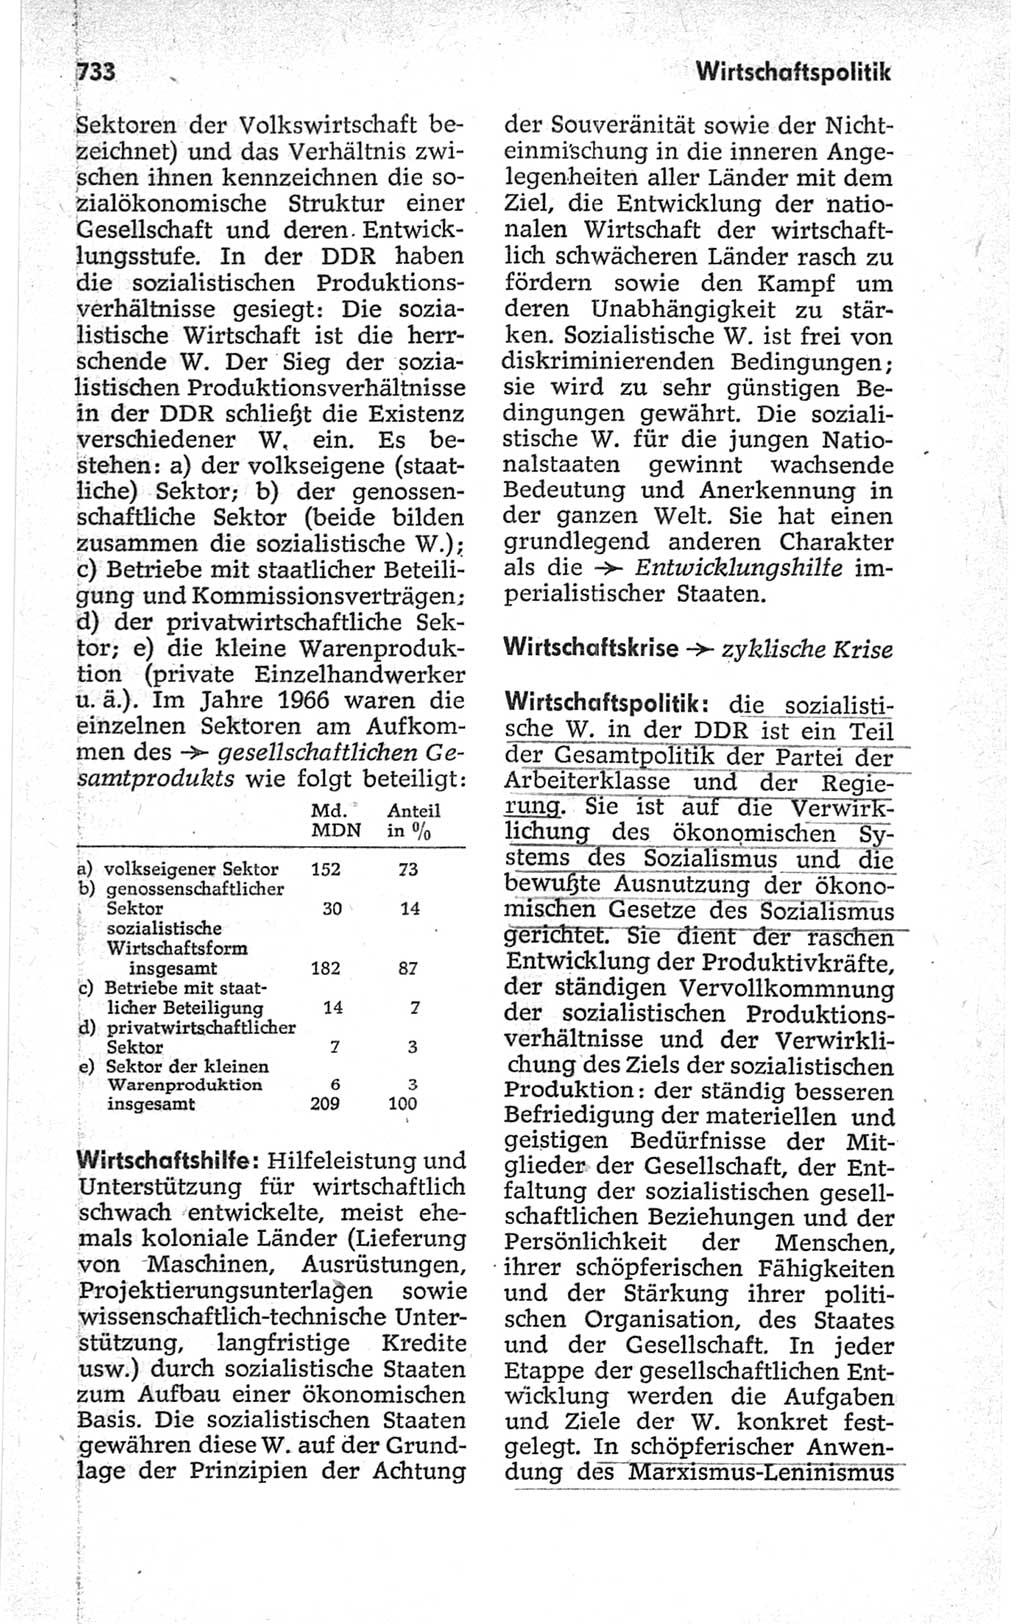 Kleines politisches Wörterbuch [Deutsche Demokratische Republik (DDR)] 1967, Seite 733 (Kl. pol. Wb. DDR 1967, S. 733)